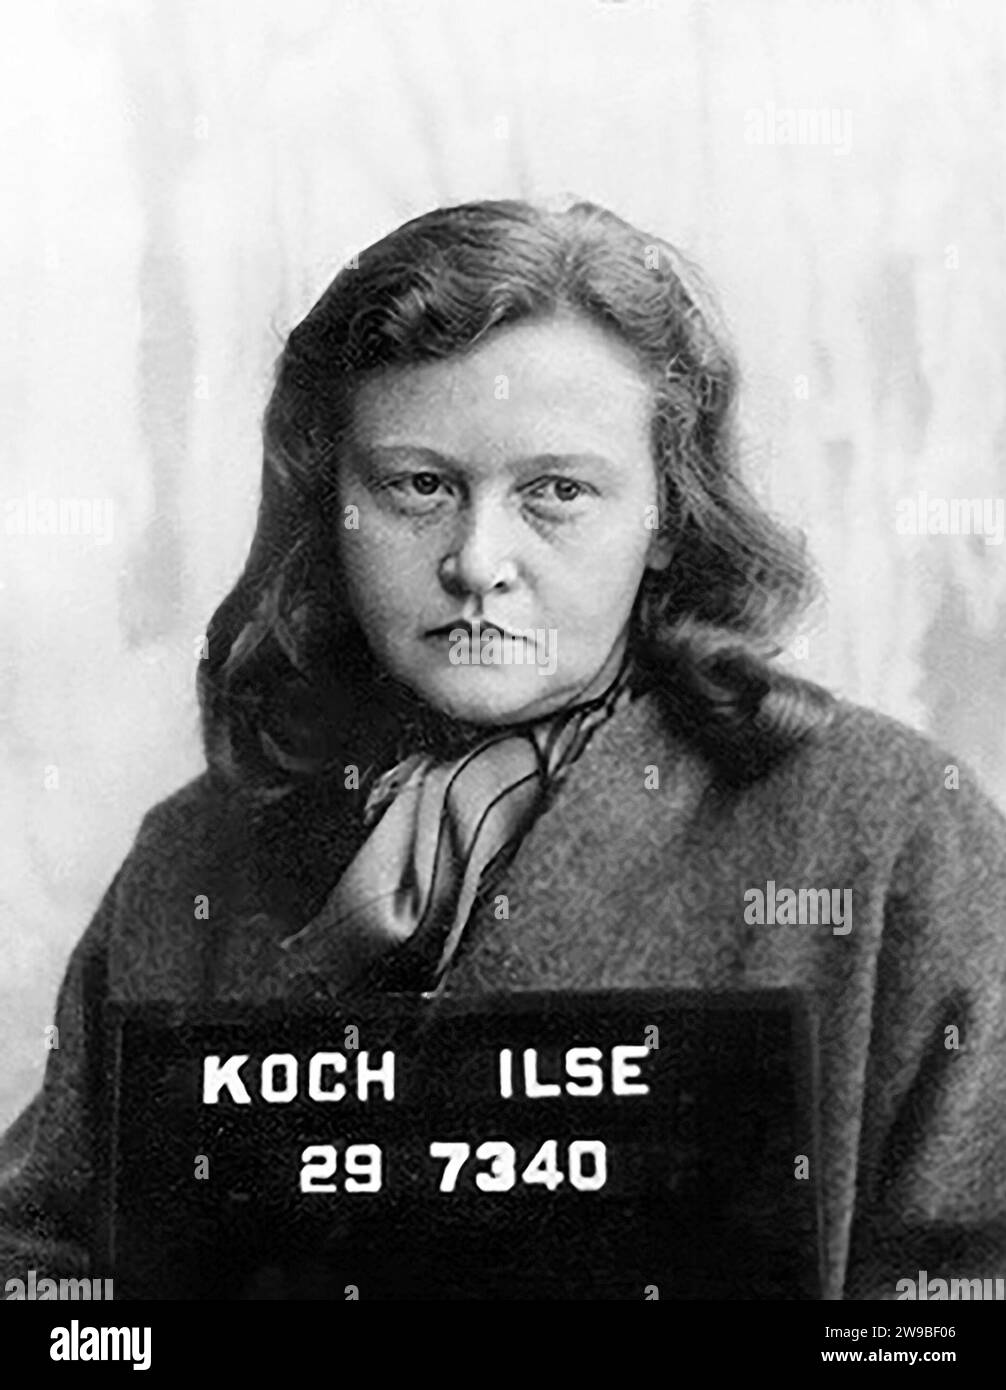 Ilse Koch. Ritratto del criminale di guerra tedesco, Ilse Koch (1906-1967), c. 1945. Koch era la moglie di Karl Koch che era comandante del campo di concentramento di Buchenwald, Foto Stock